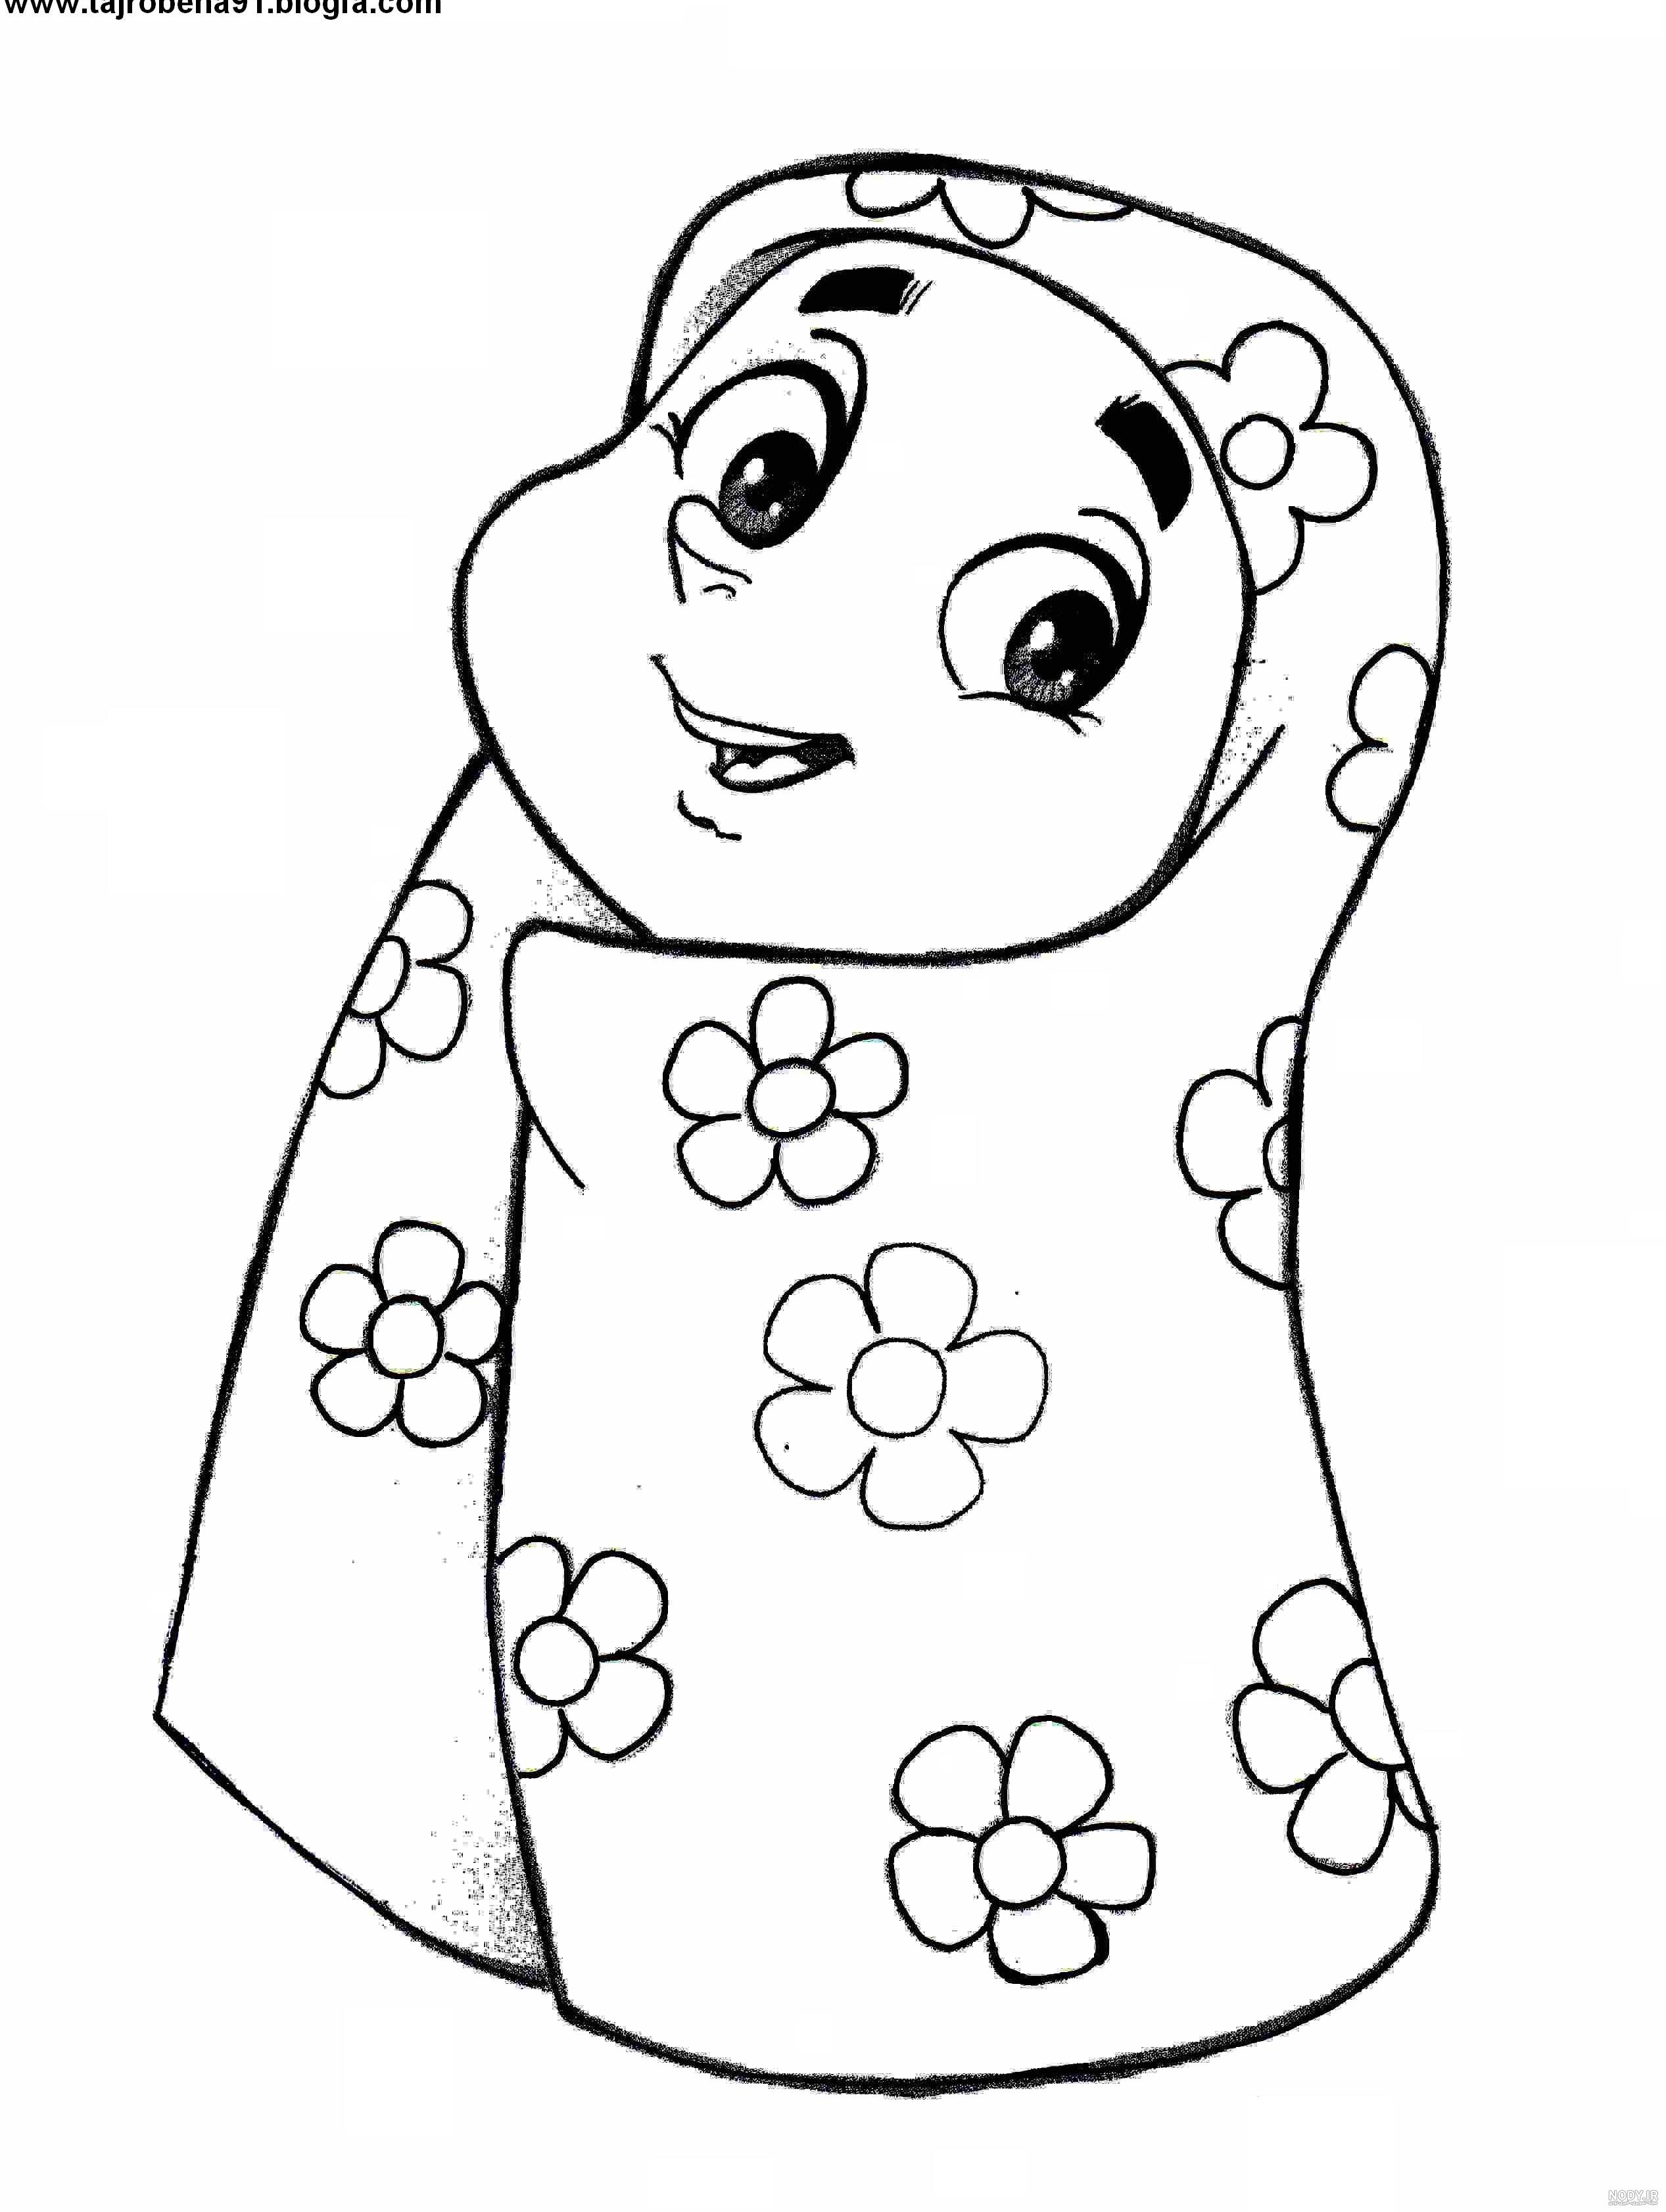 نقاشی در مورد حجاب و عفاف برای نوجوانان